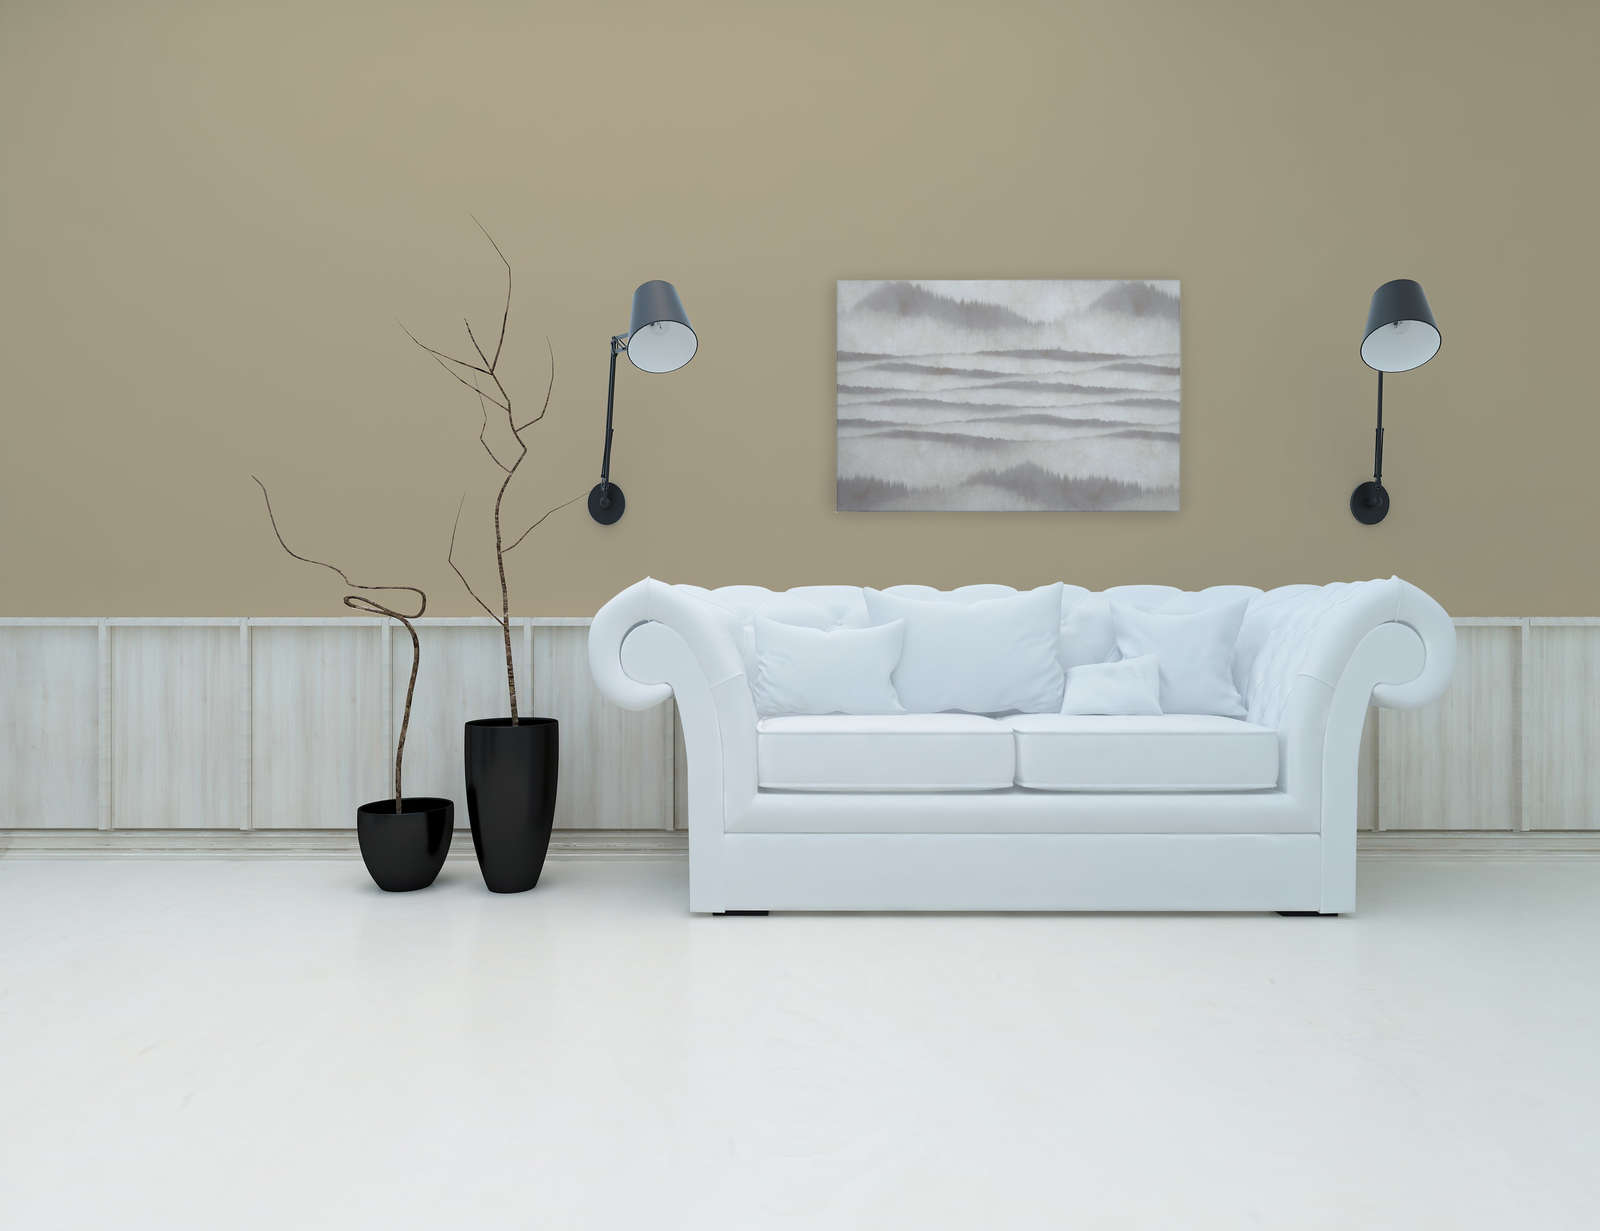             Tableau toile motif abstrait vagues | blanc, gris - 0,90 m x 0,60 m
        